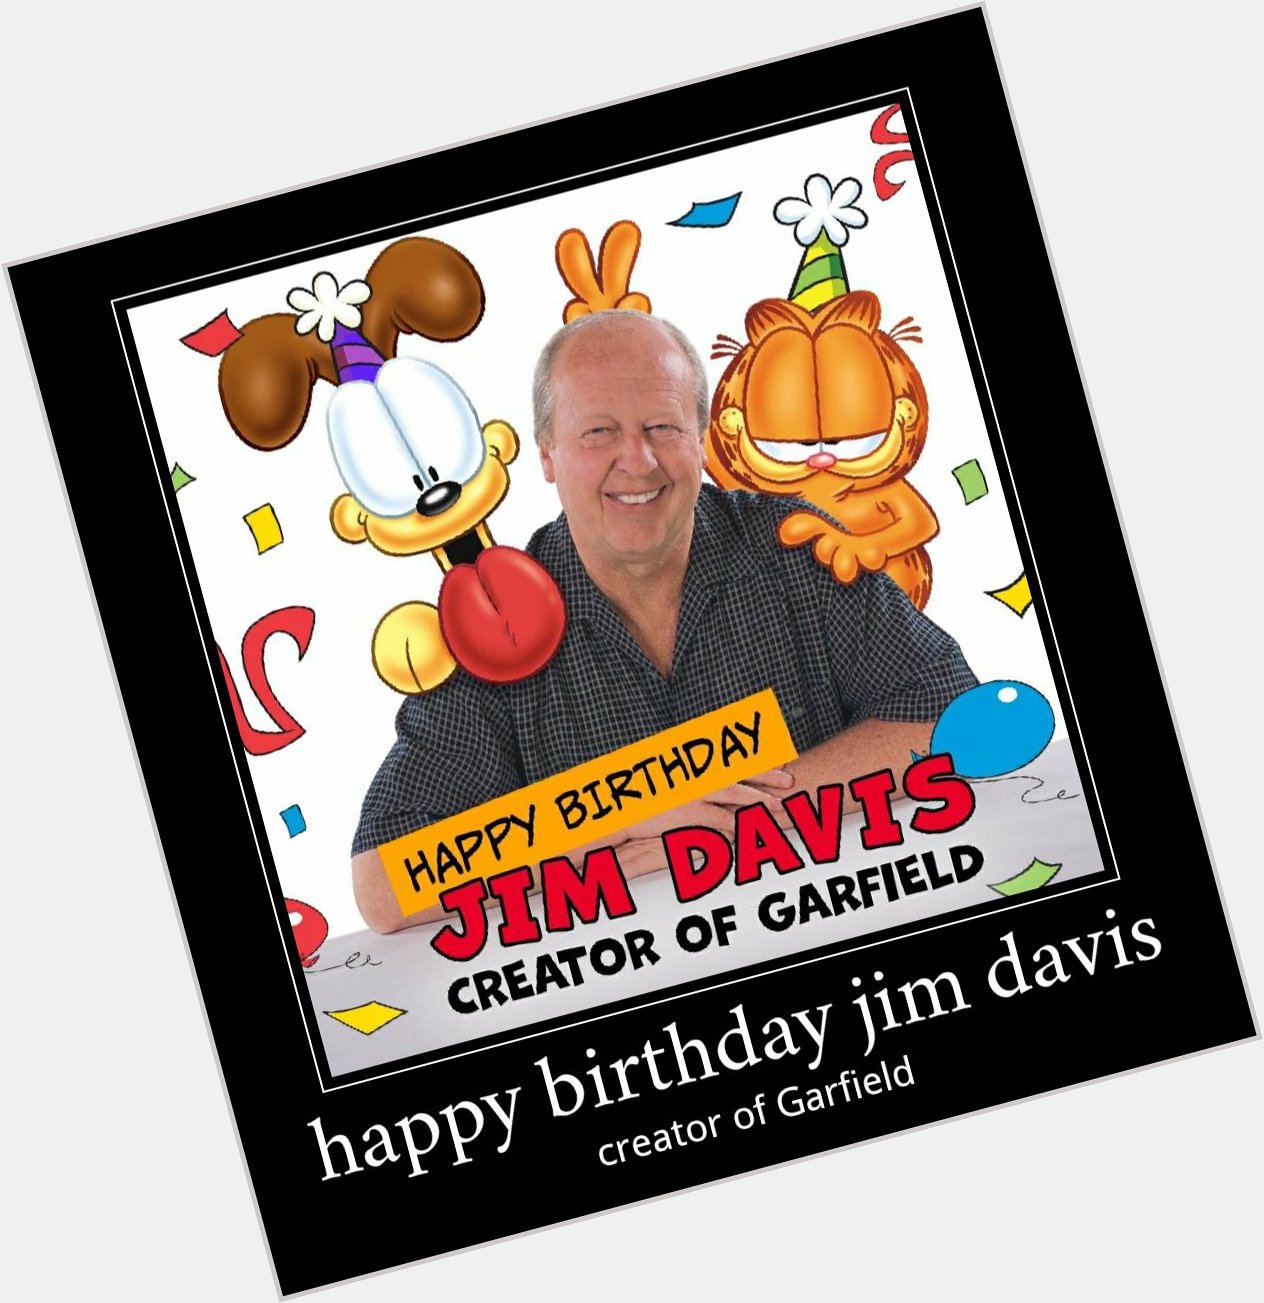  happy birthday jim davis
Creator of Garfield 